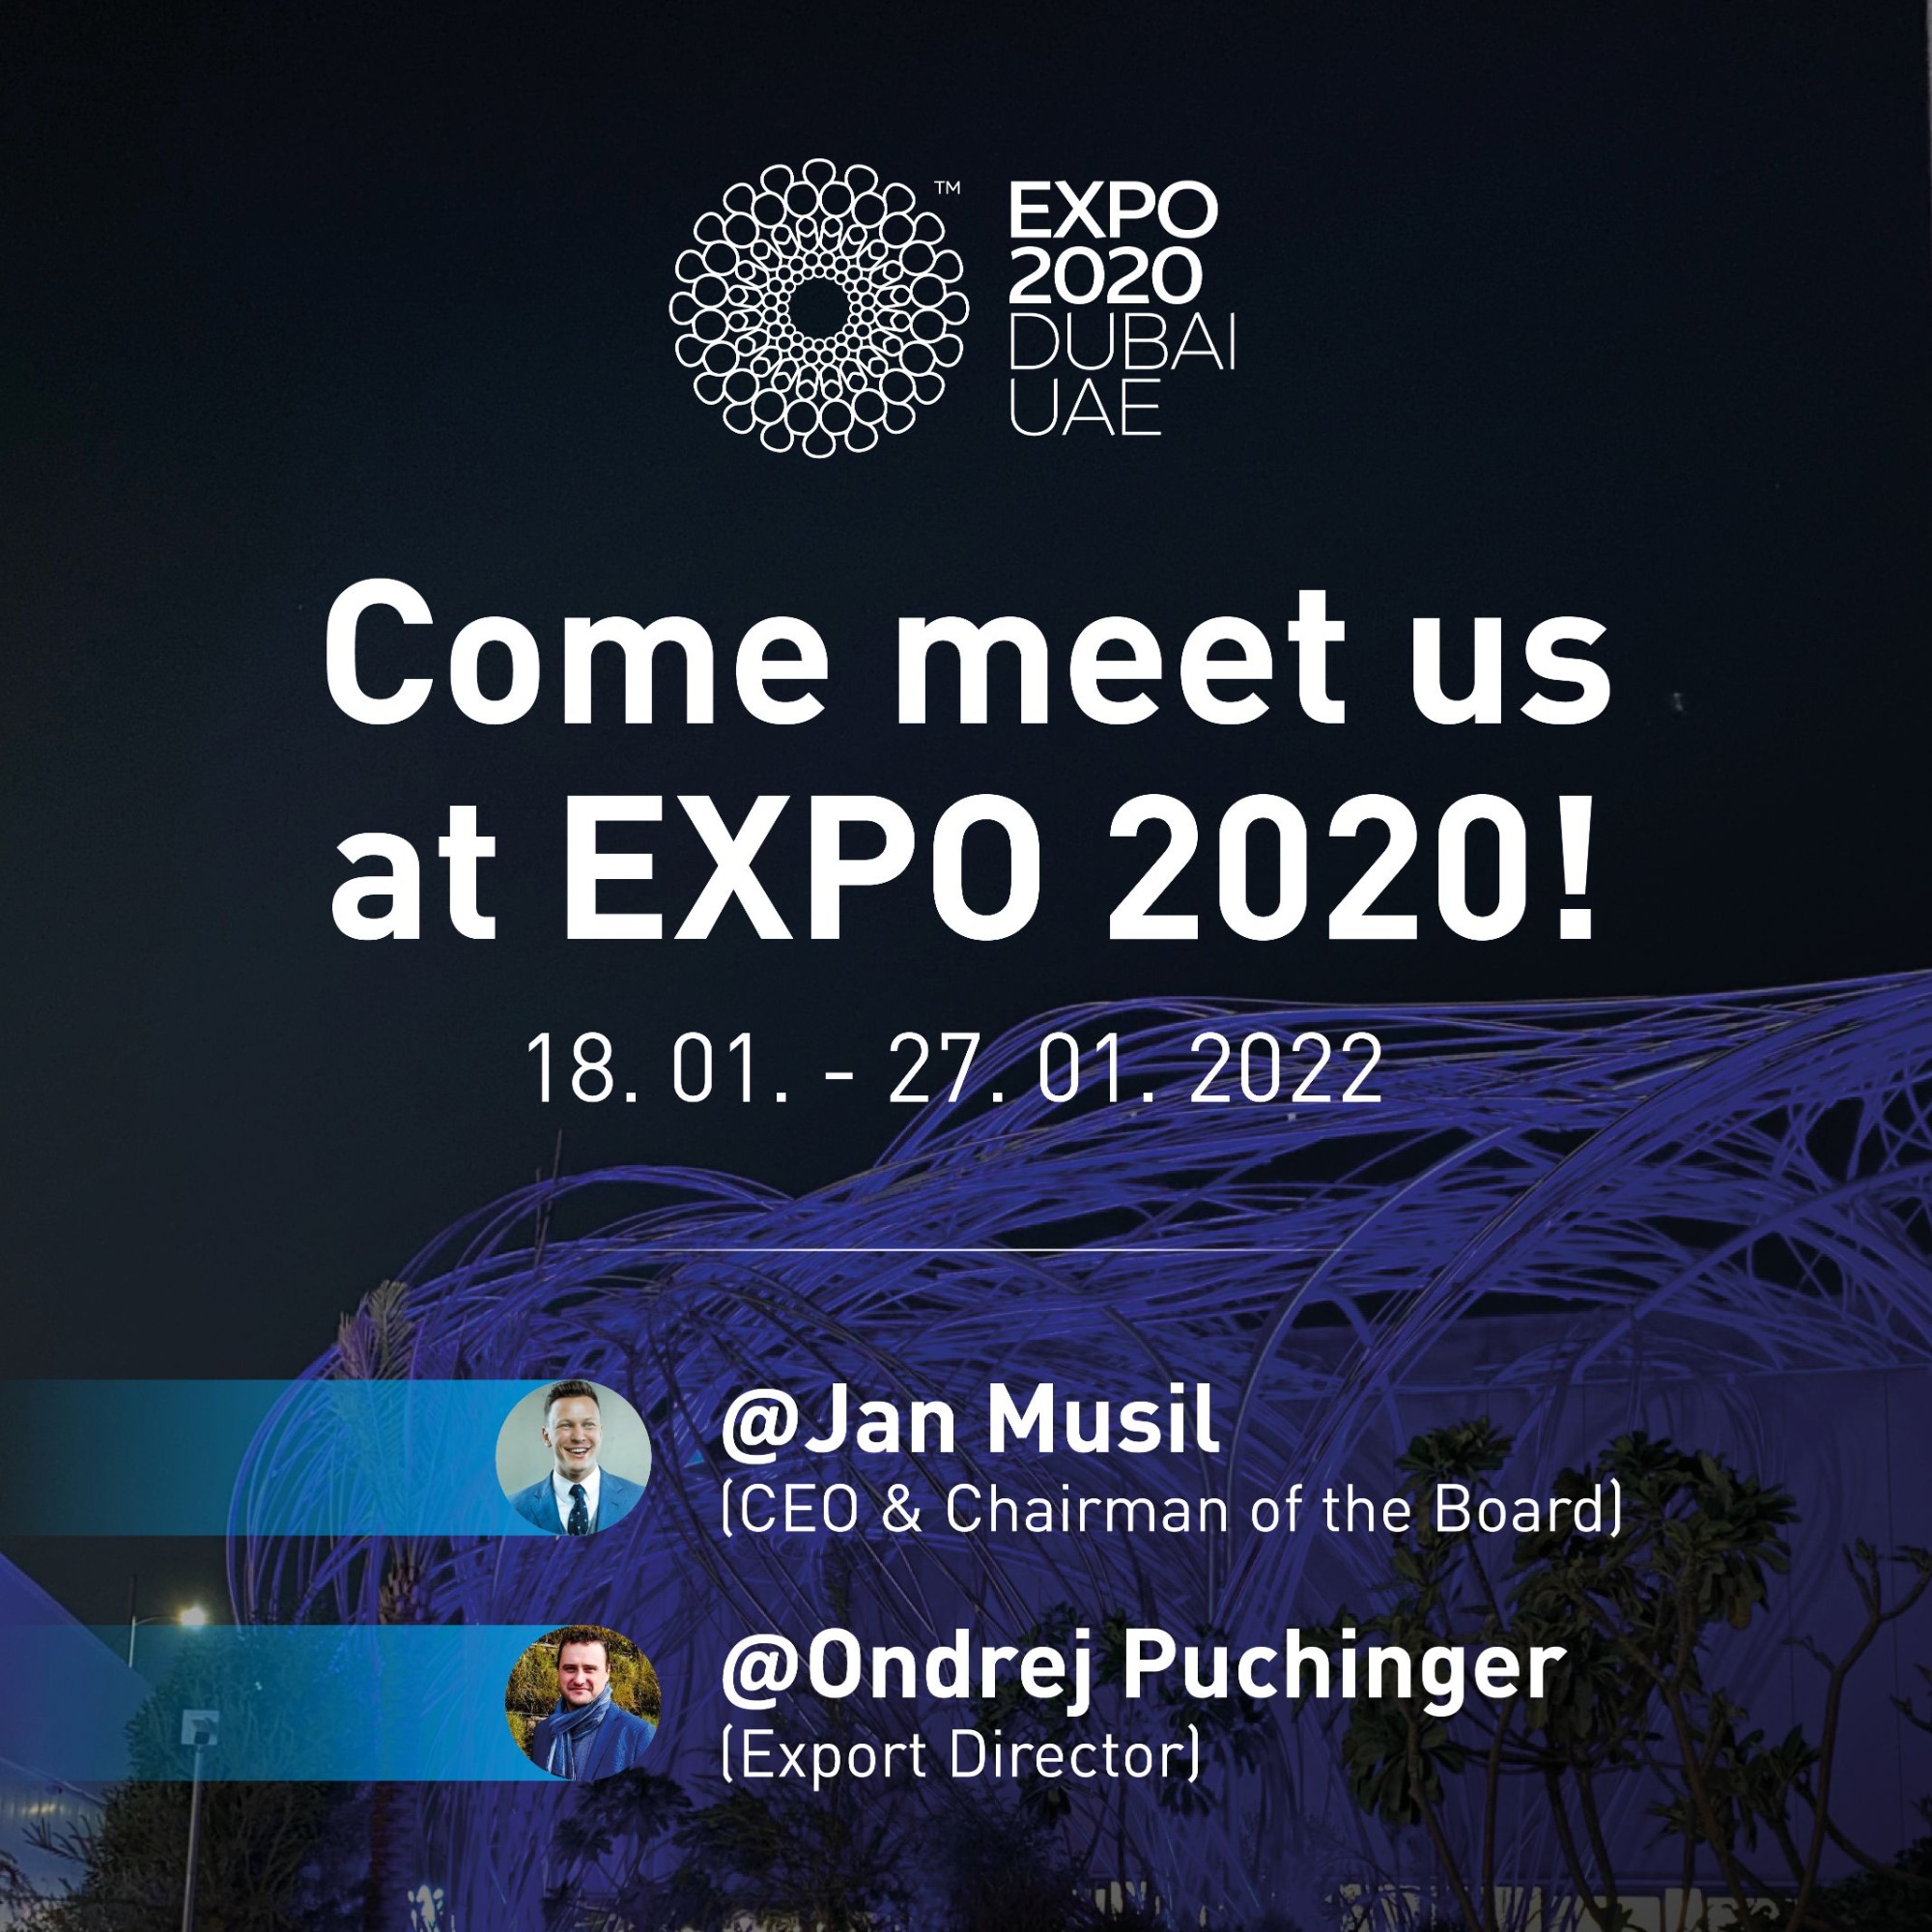 Setkejte se s námi na Expo 2020